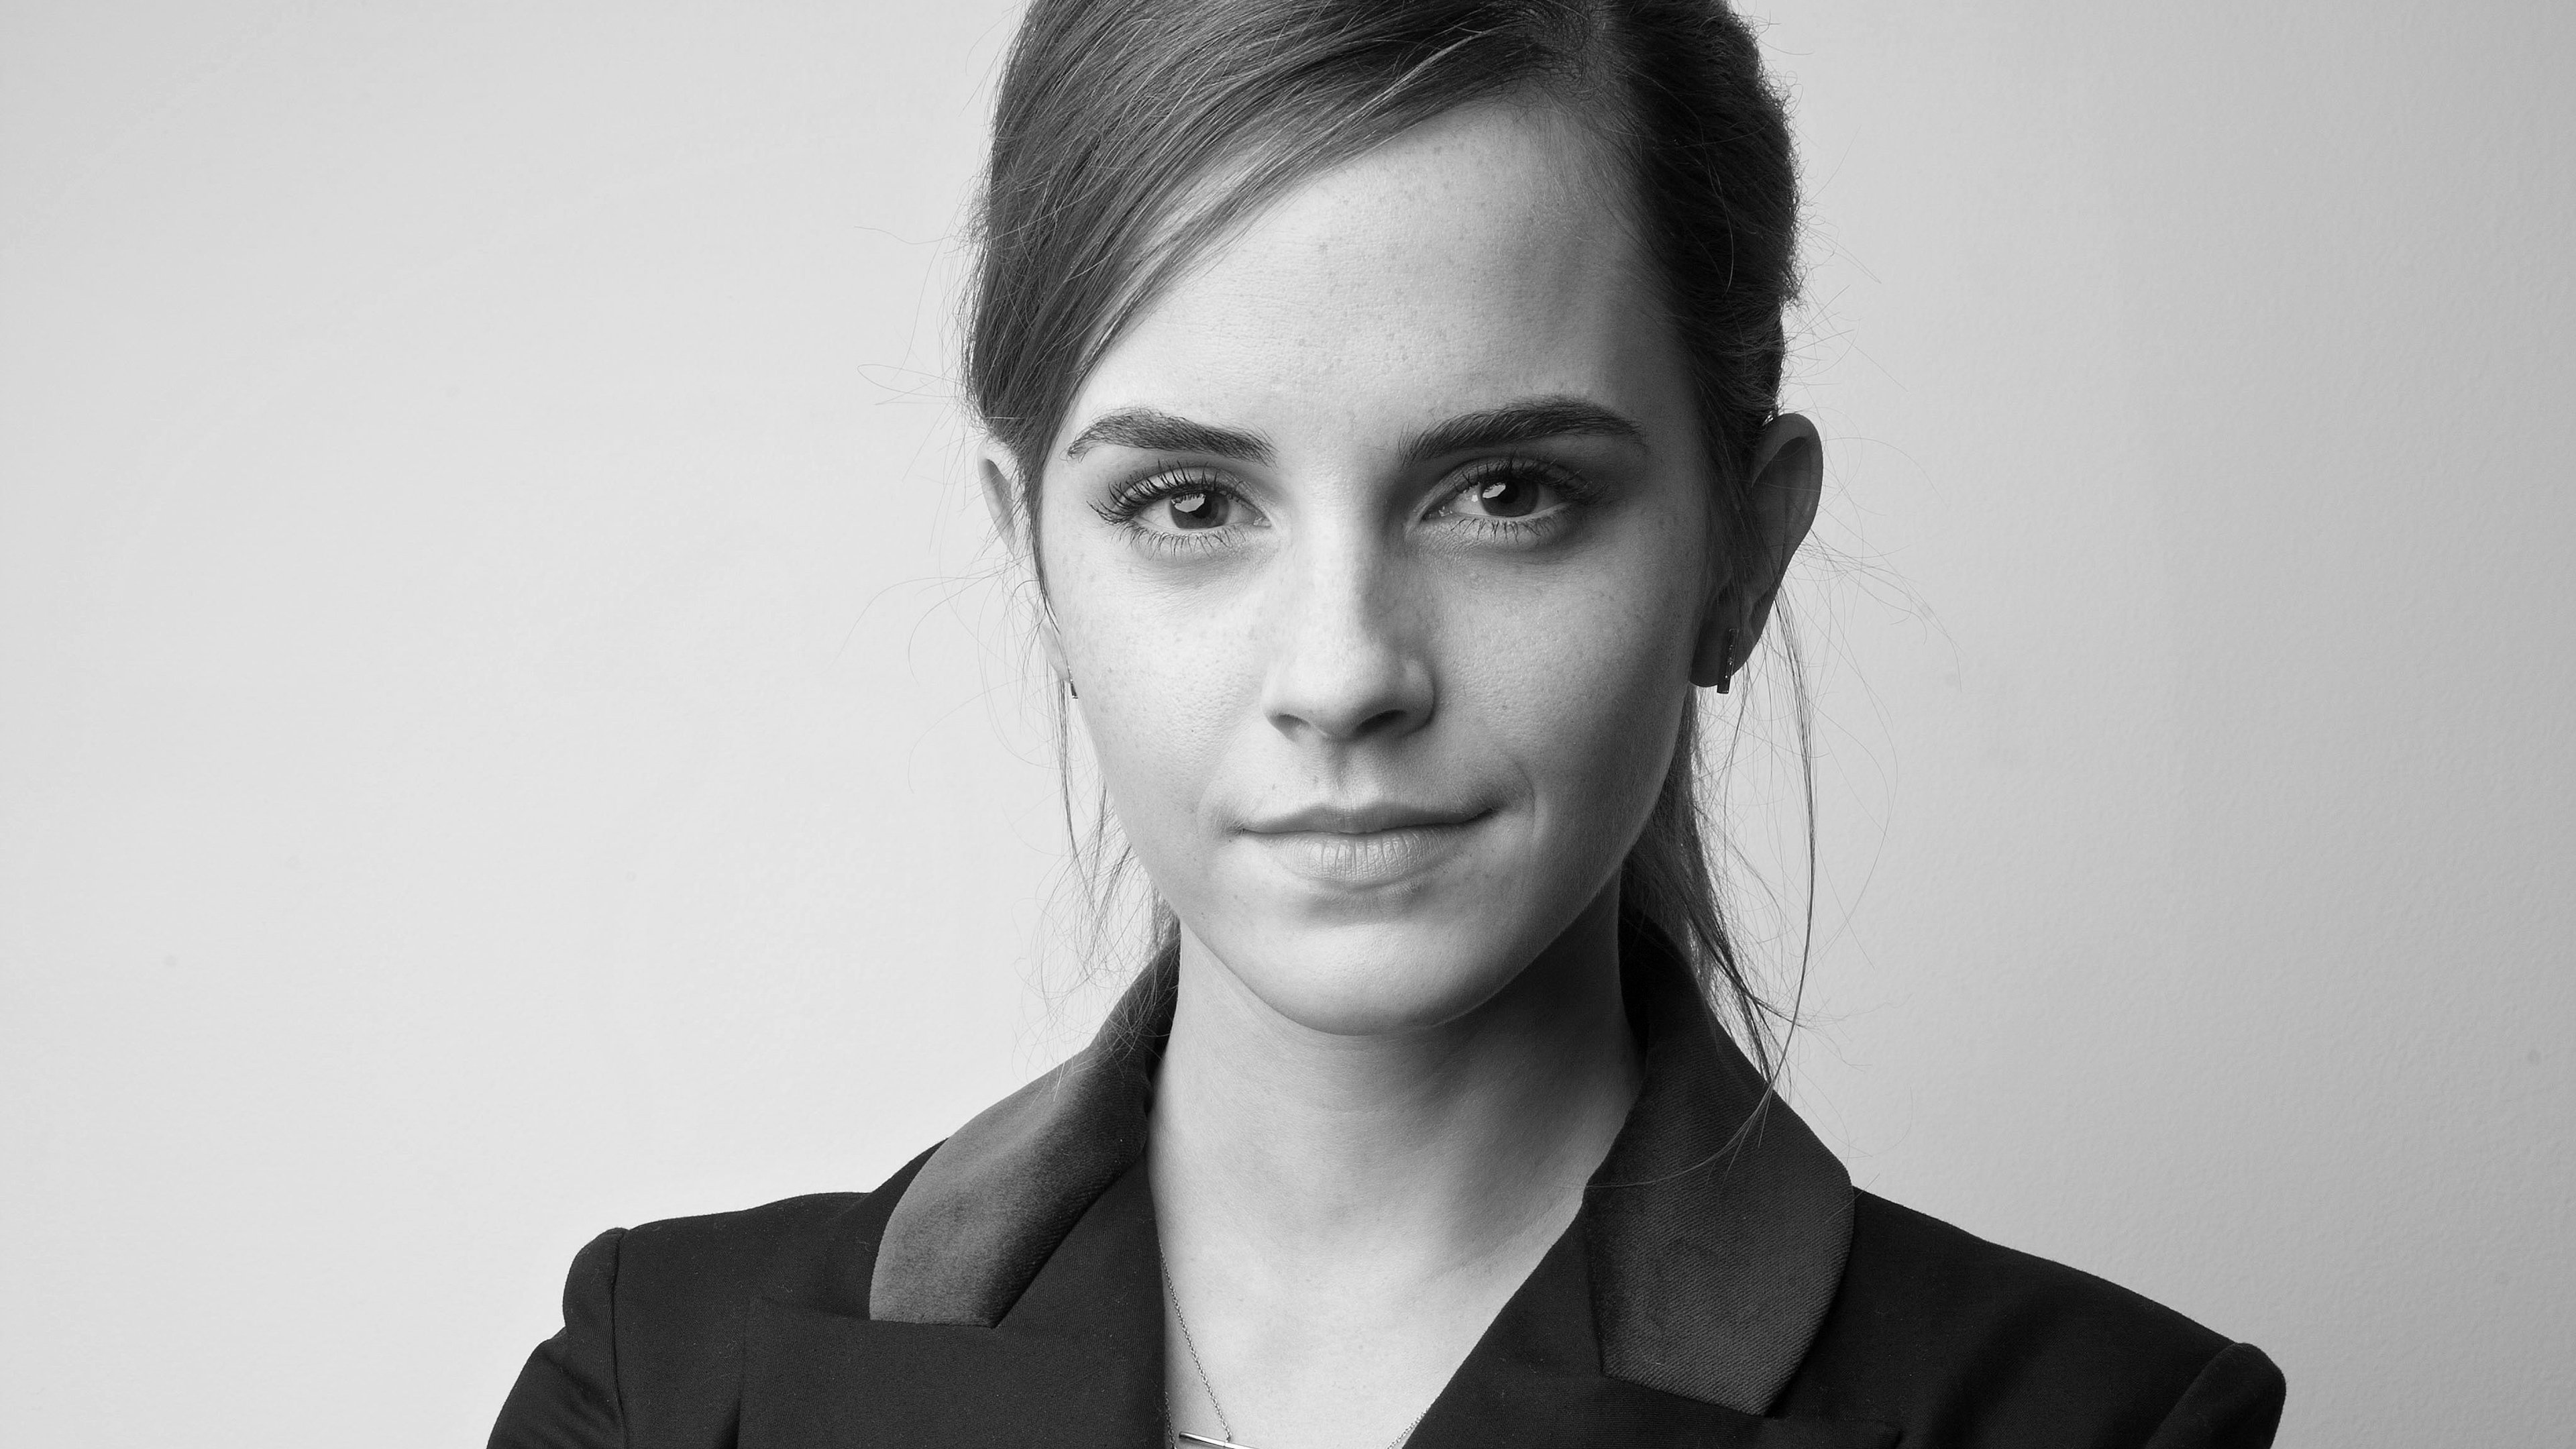 Emma Watson 2019 4k Watson Black And White